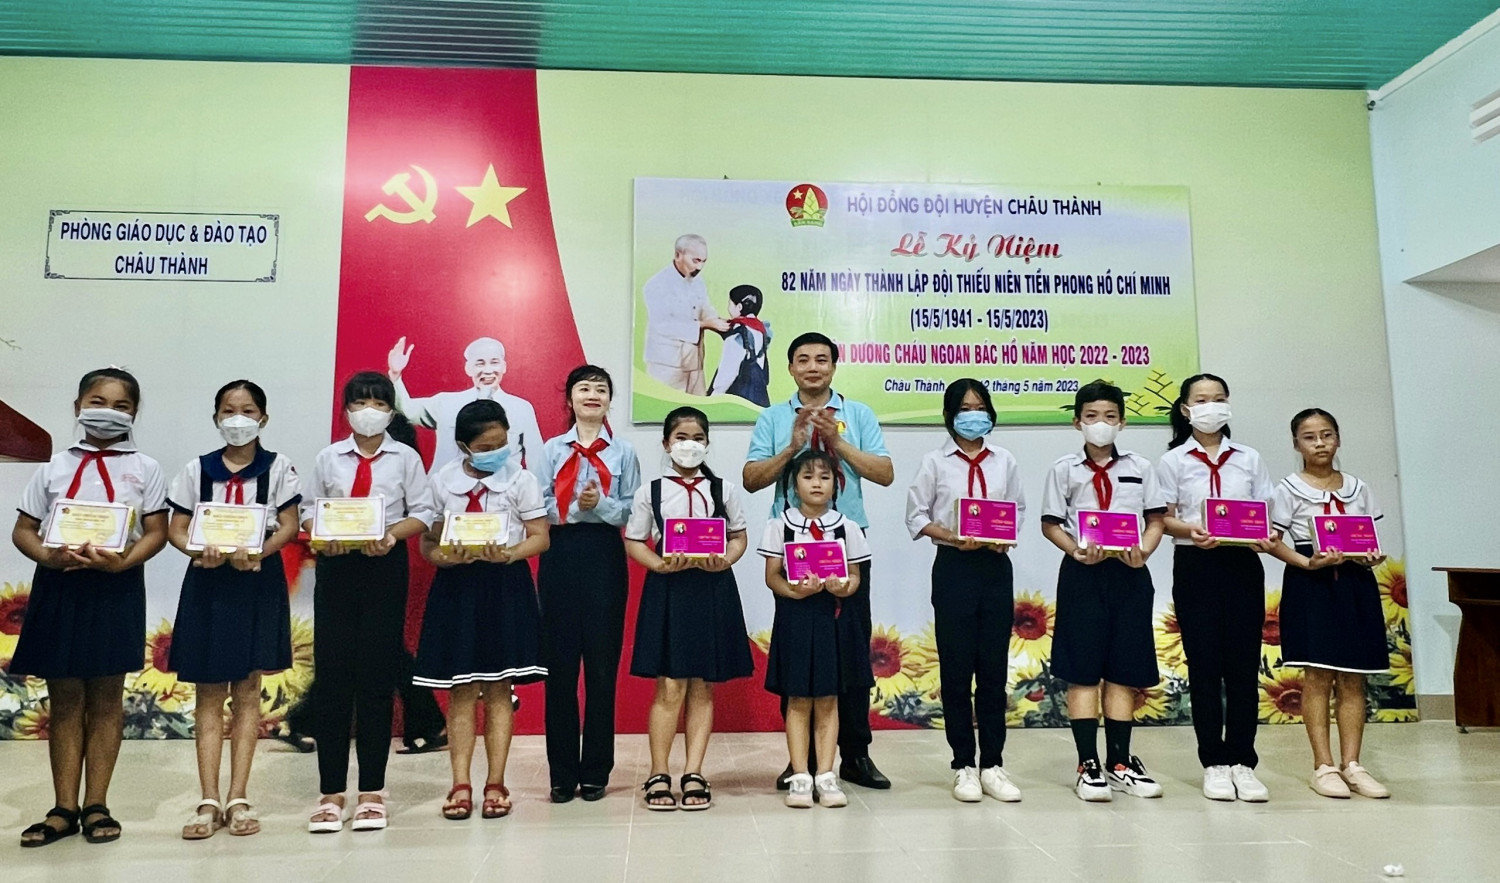 Kỷ niệm 82 năm ngày thành lập Đội thiếu niên tiền phong  Hồ Chí Minh và tuyên dương cháu ngoan Bác Hồ